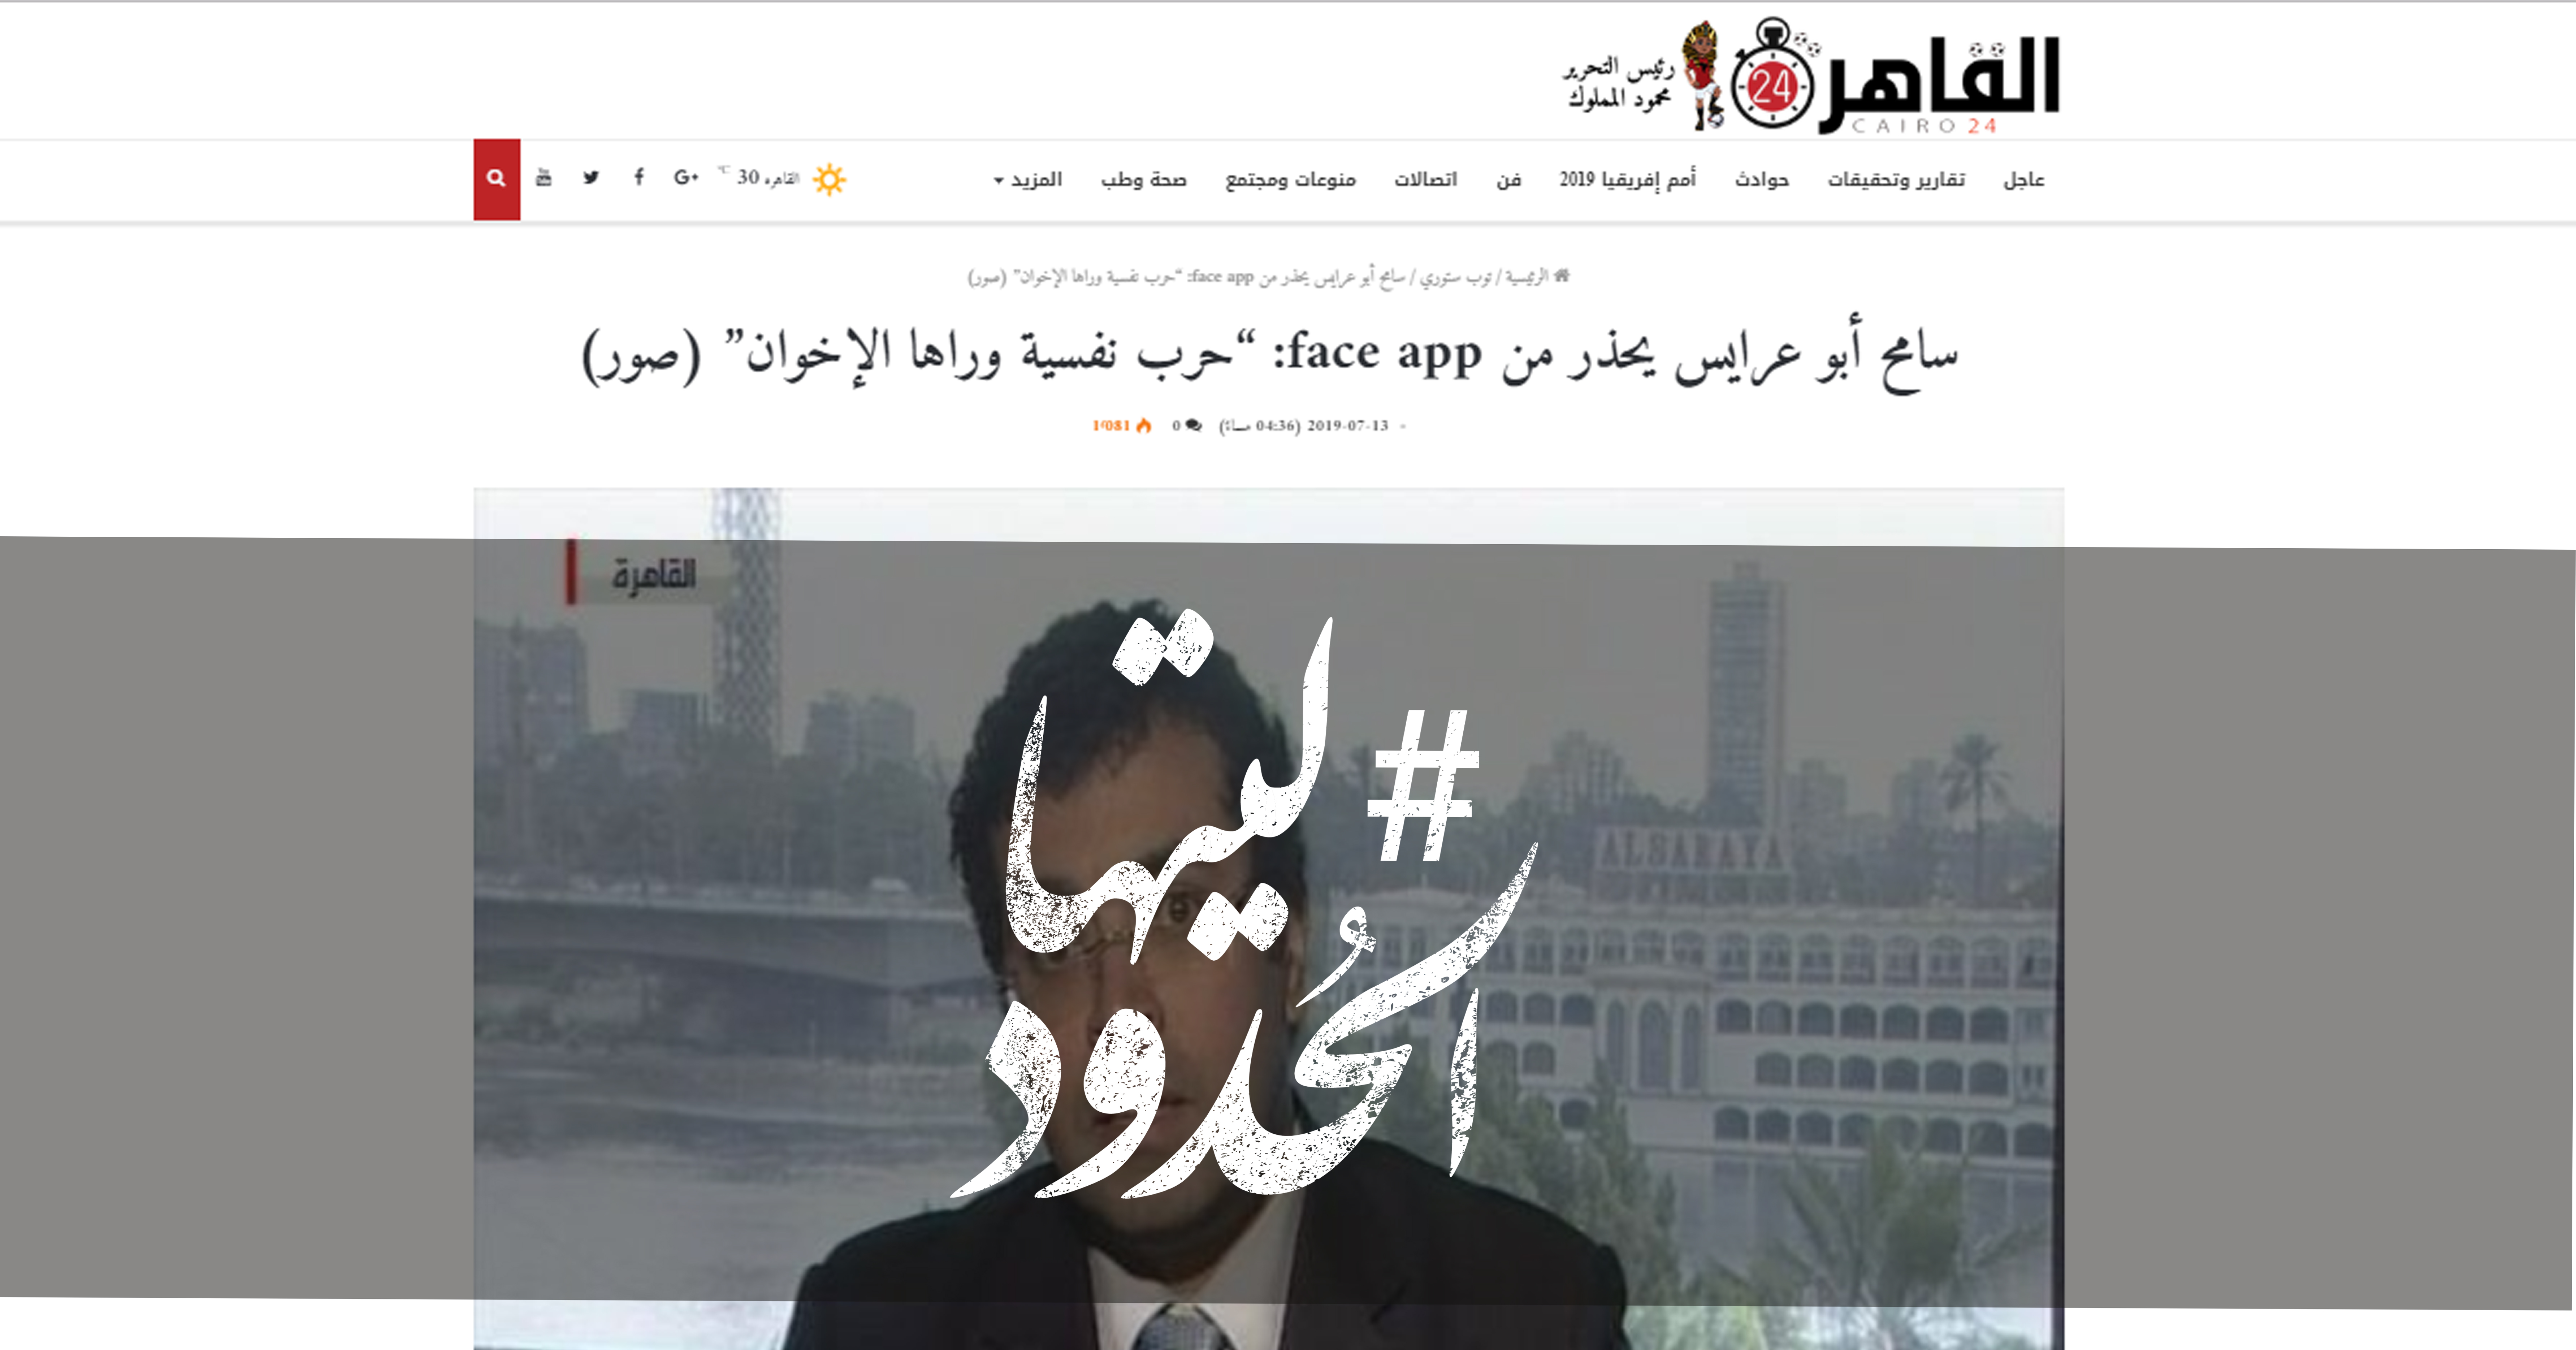 صورة سامح أبو عرايس يحذر من face app :“حرب نفسية وراها الإخوان”